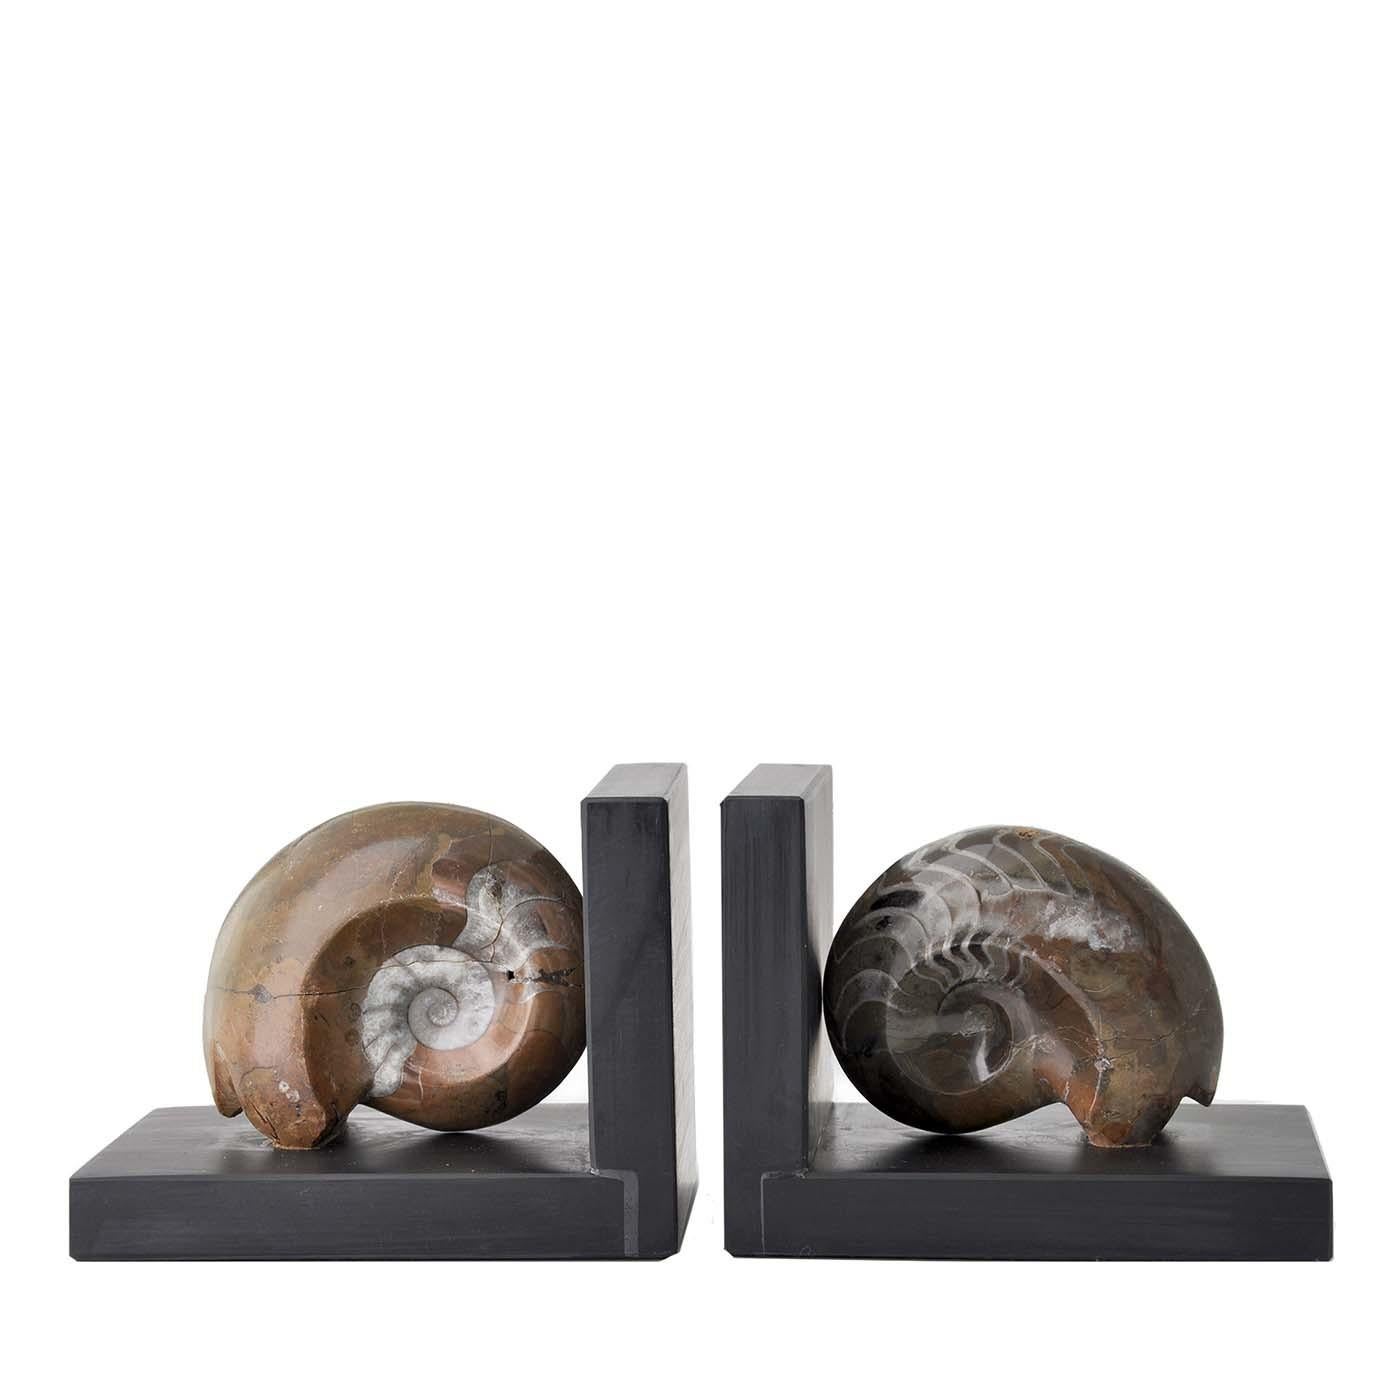 Die exklusive Skulptur Ammonite Booksends kombiniert zeitgenössisches Design mit authentischen fossilen Muscheln, die vor Millionen von Jahren entstanden sind. Sie ist wirklich einzigartig, denn die natürliche Form und die dekorativen Farben jeder